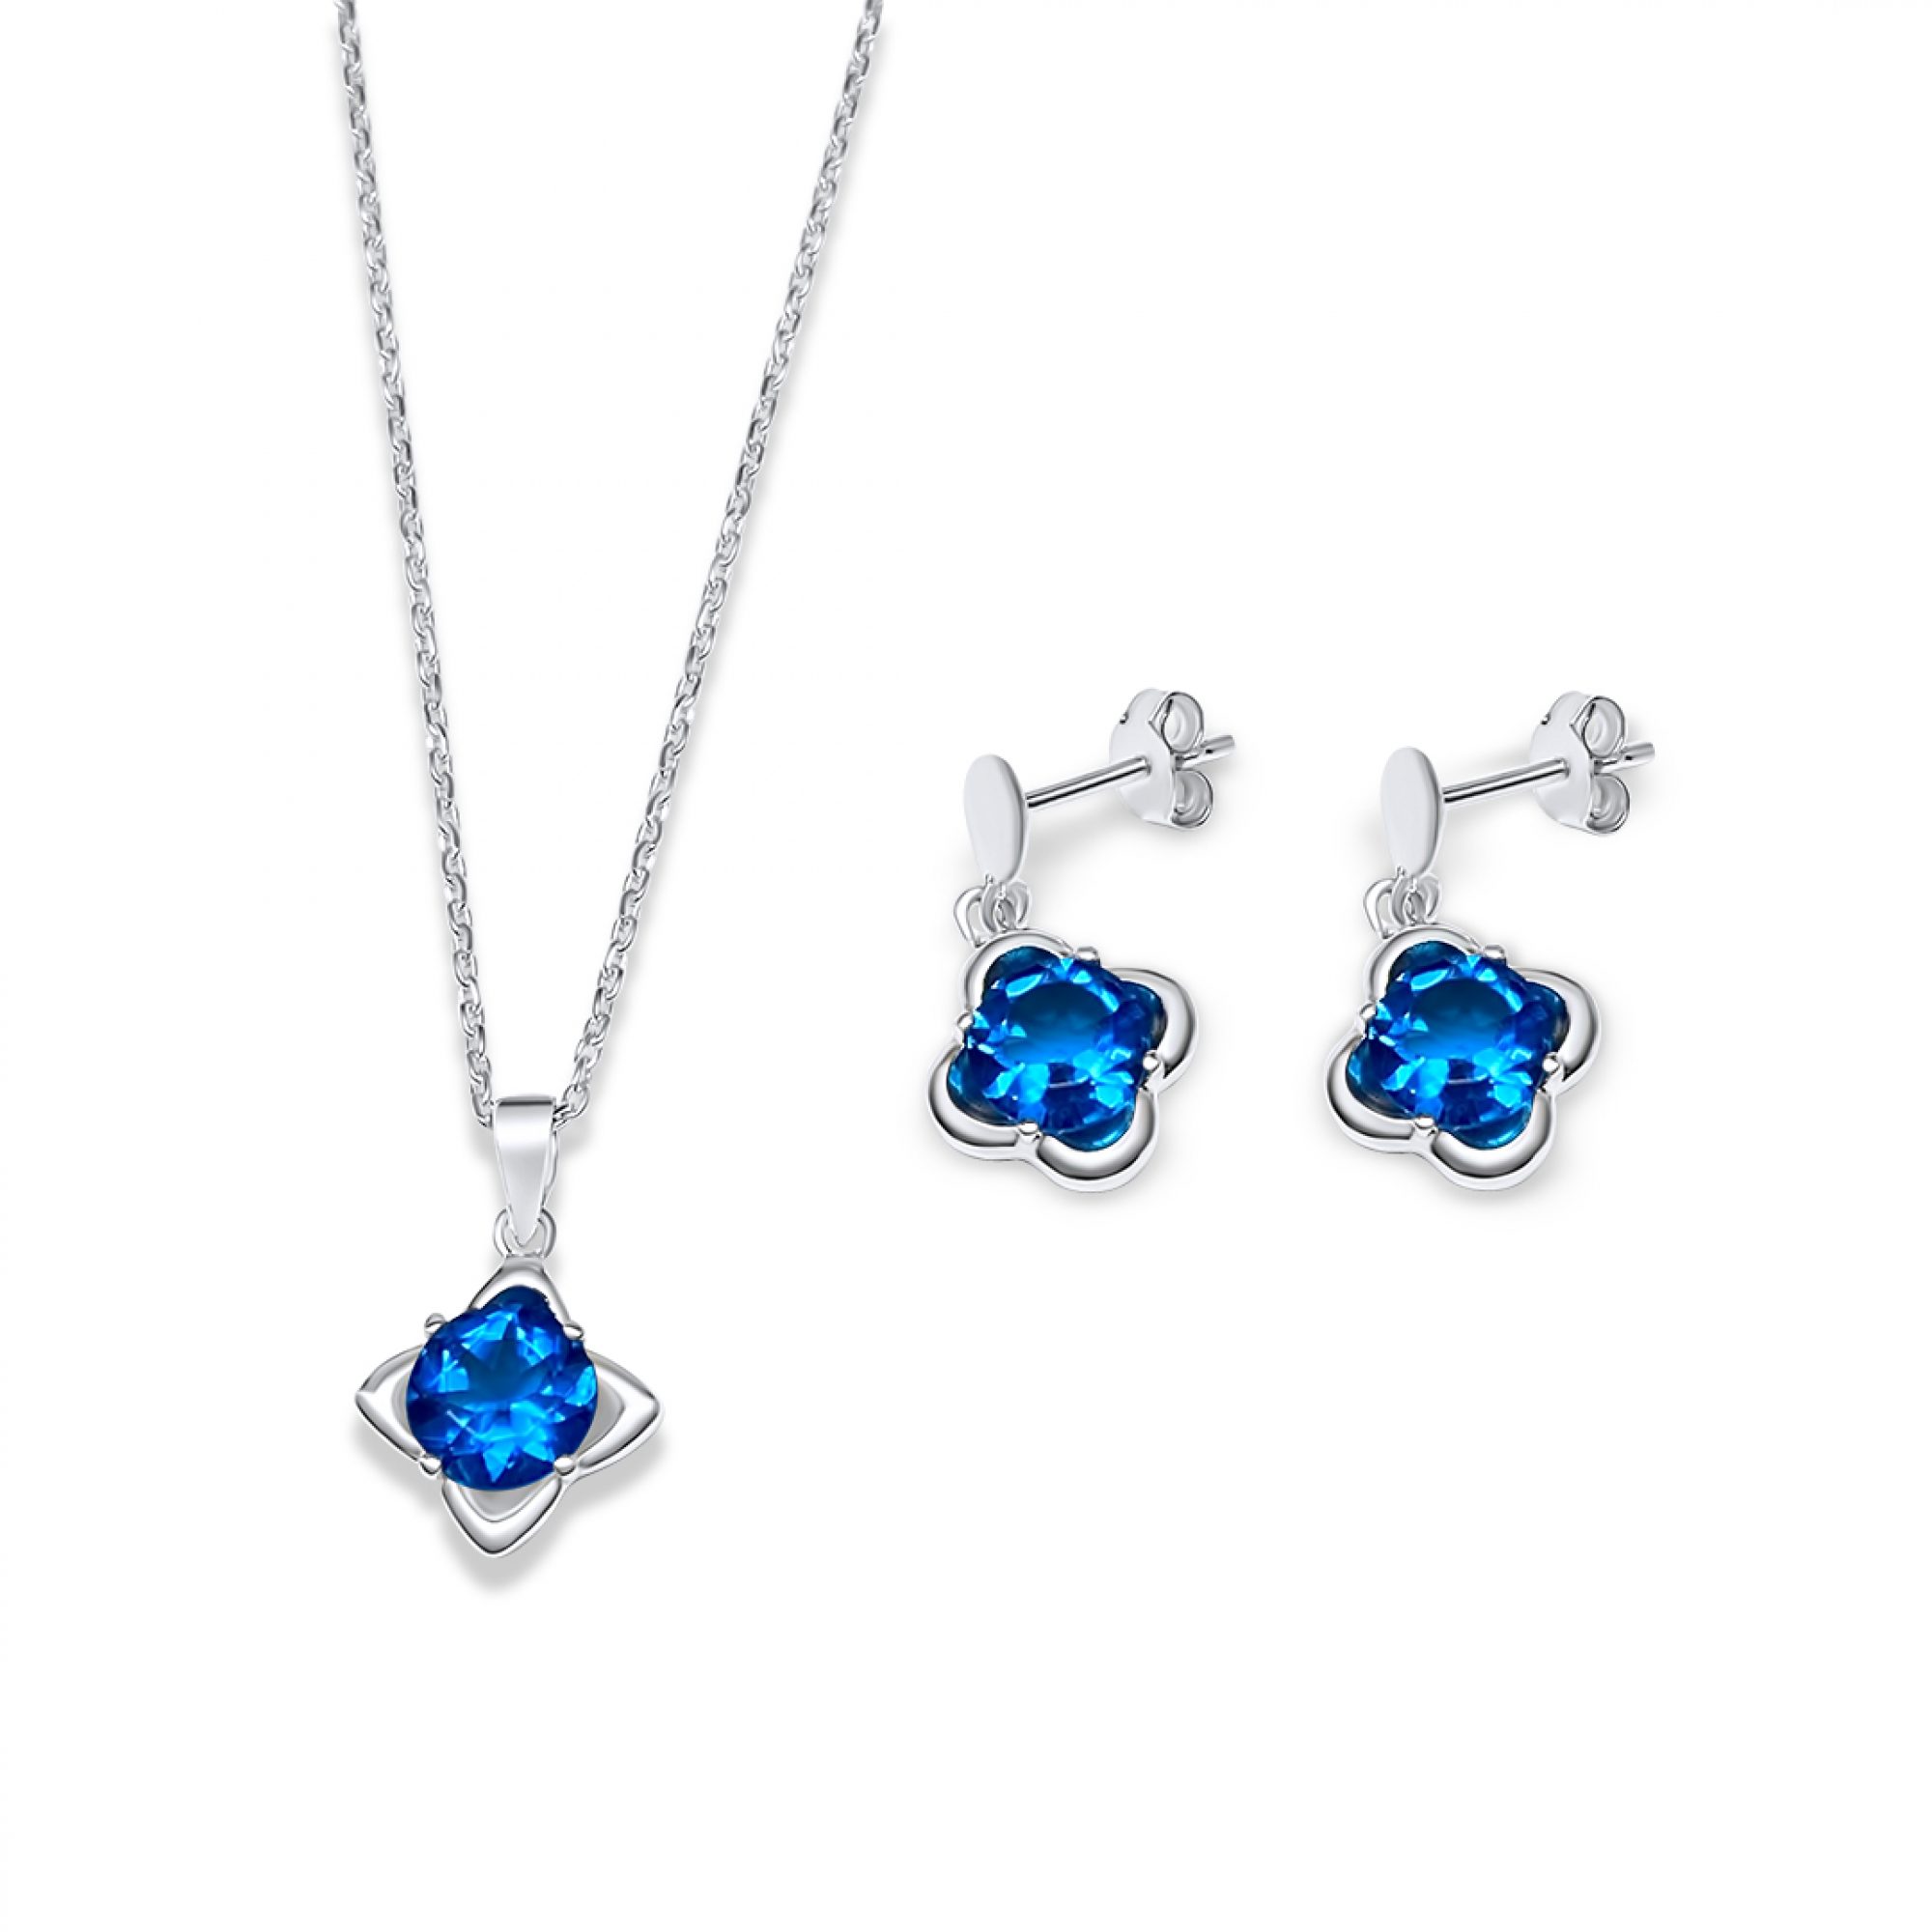 Set with aquamarine and zircon stones